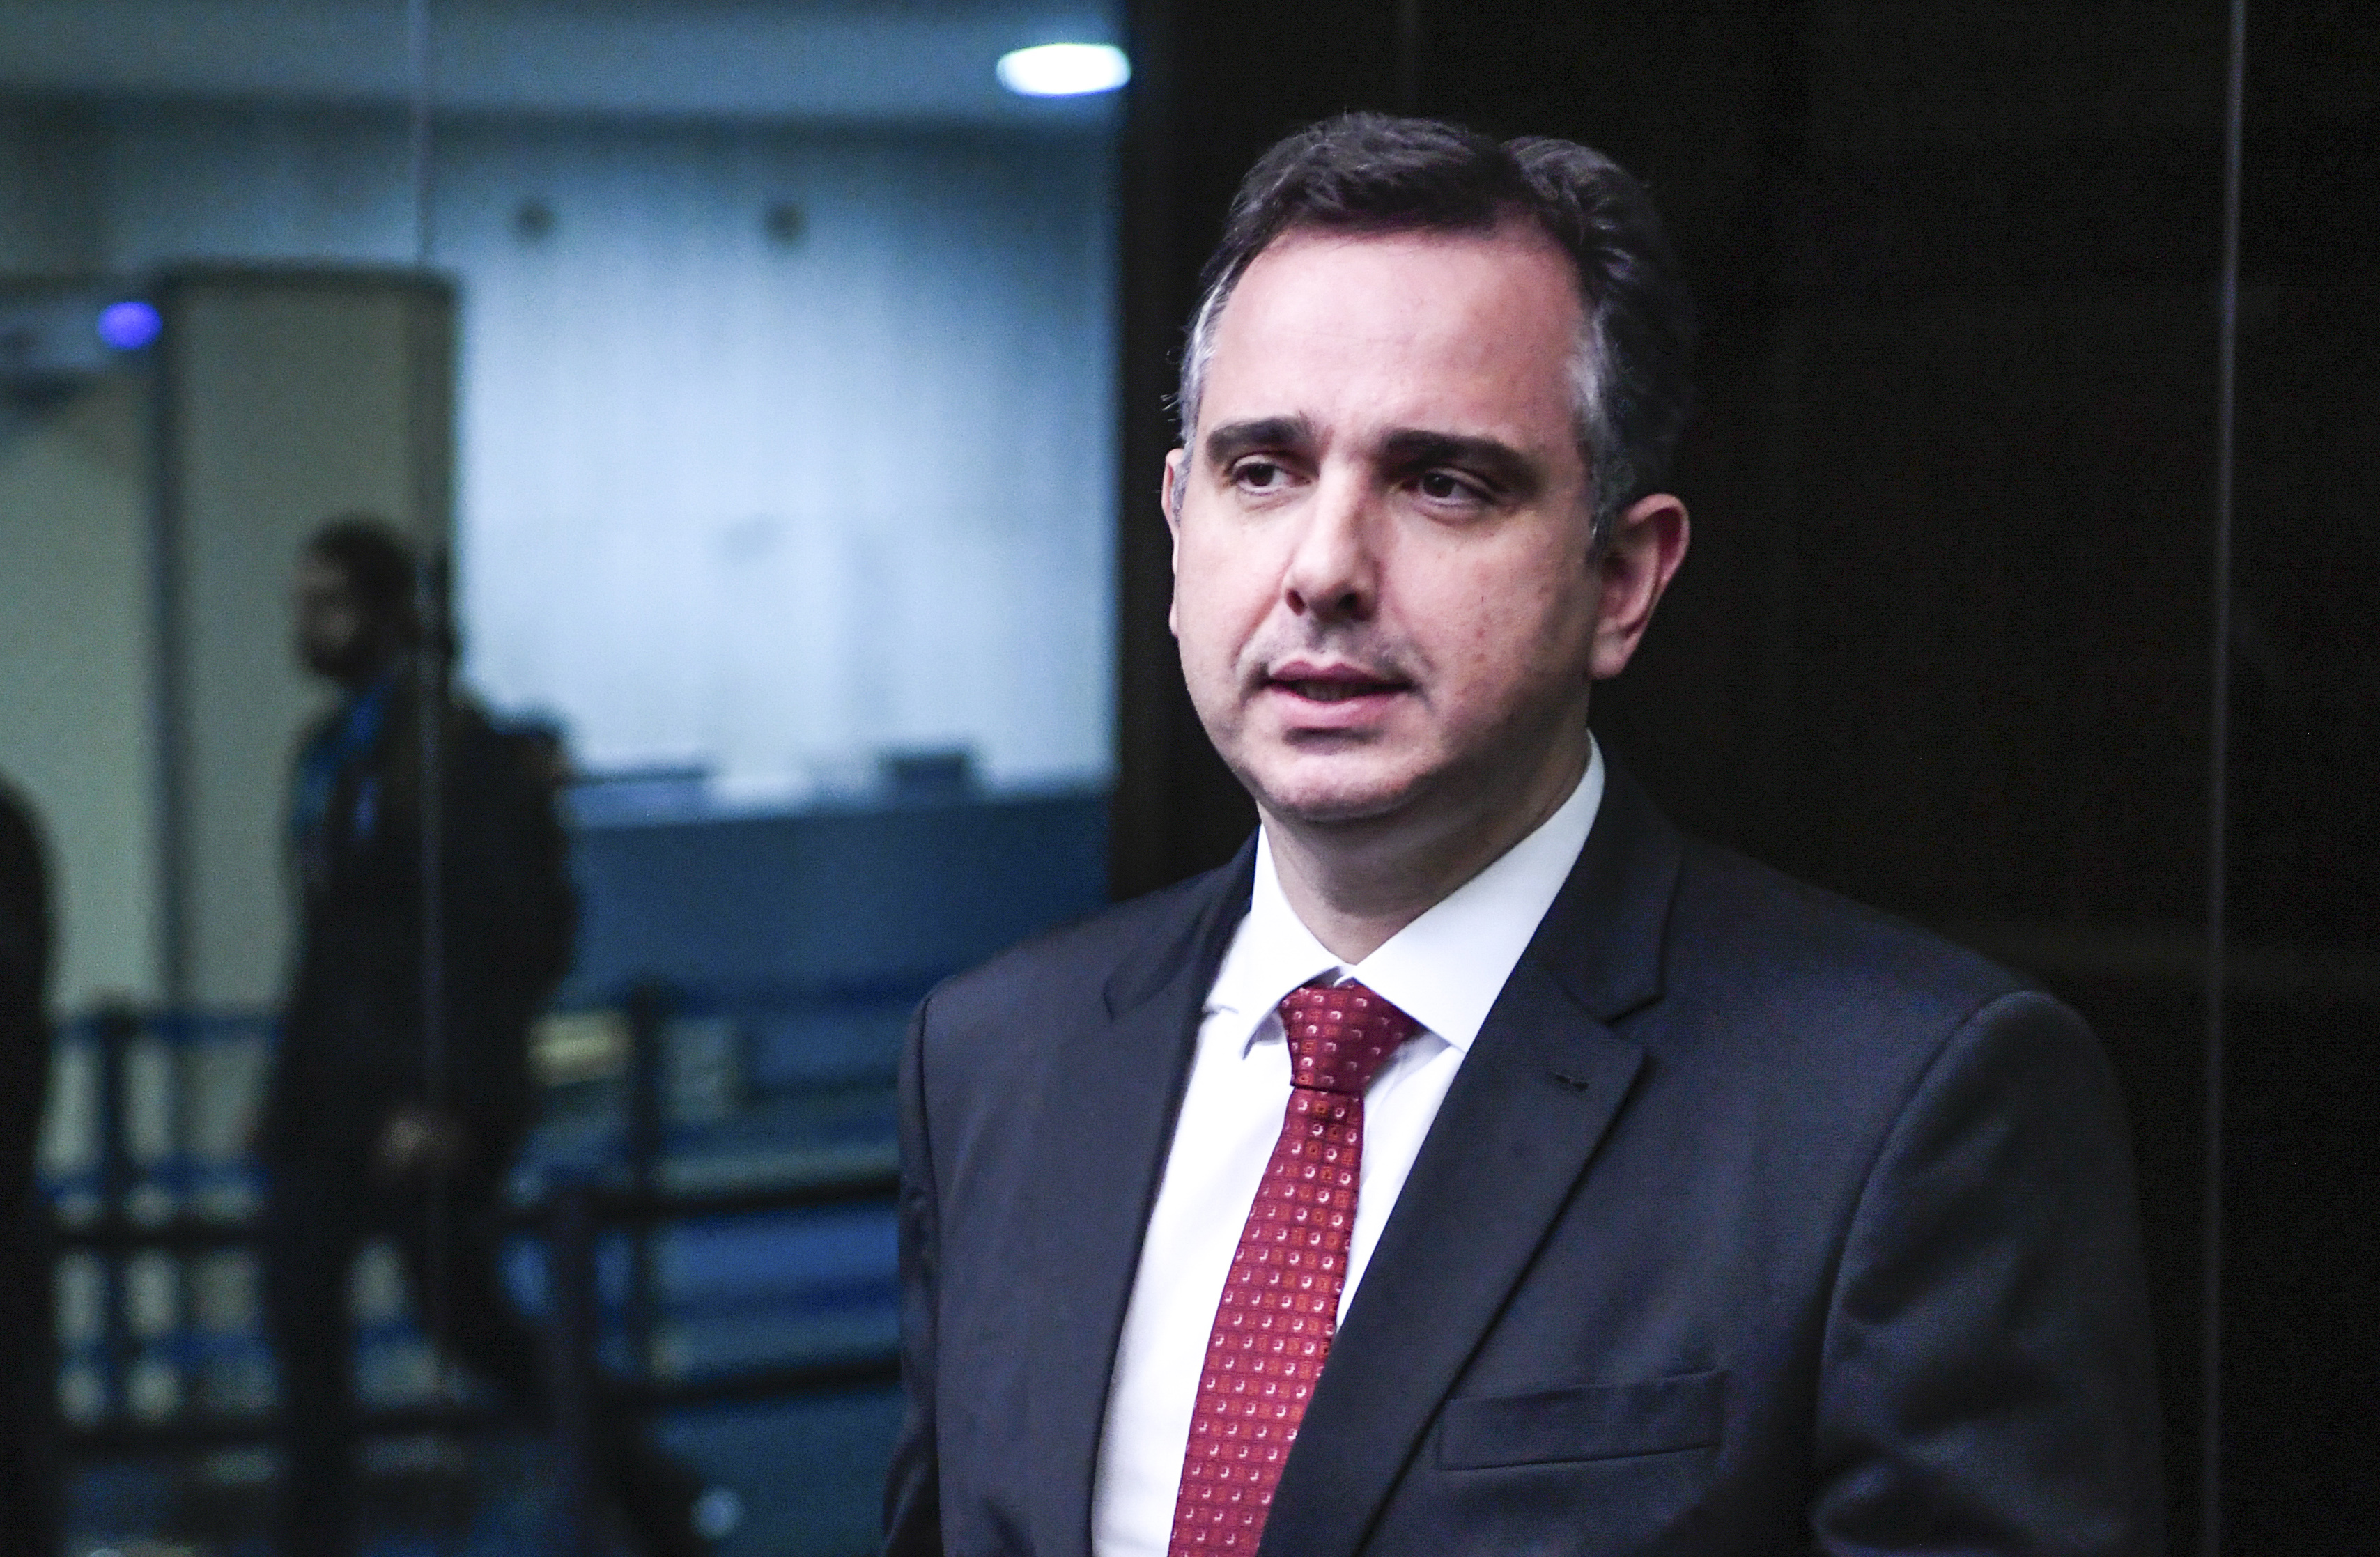 Senado votará indicação de secretário da Defesa a embaixador, diz Pacheco |  VEJA